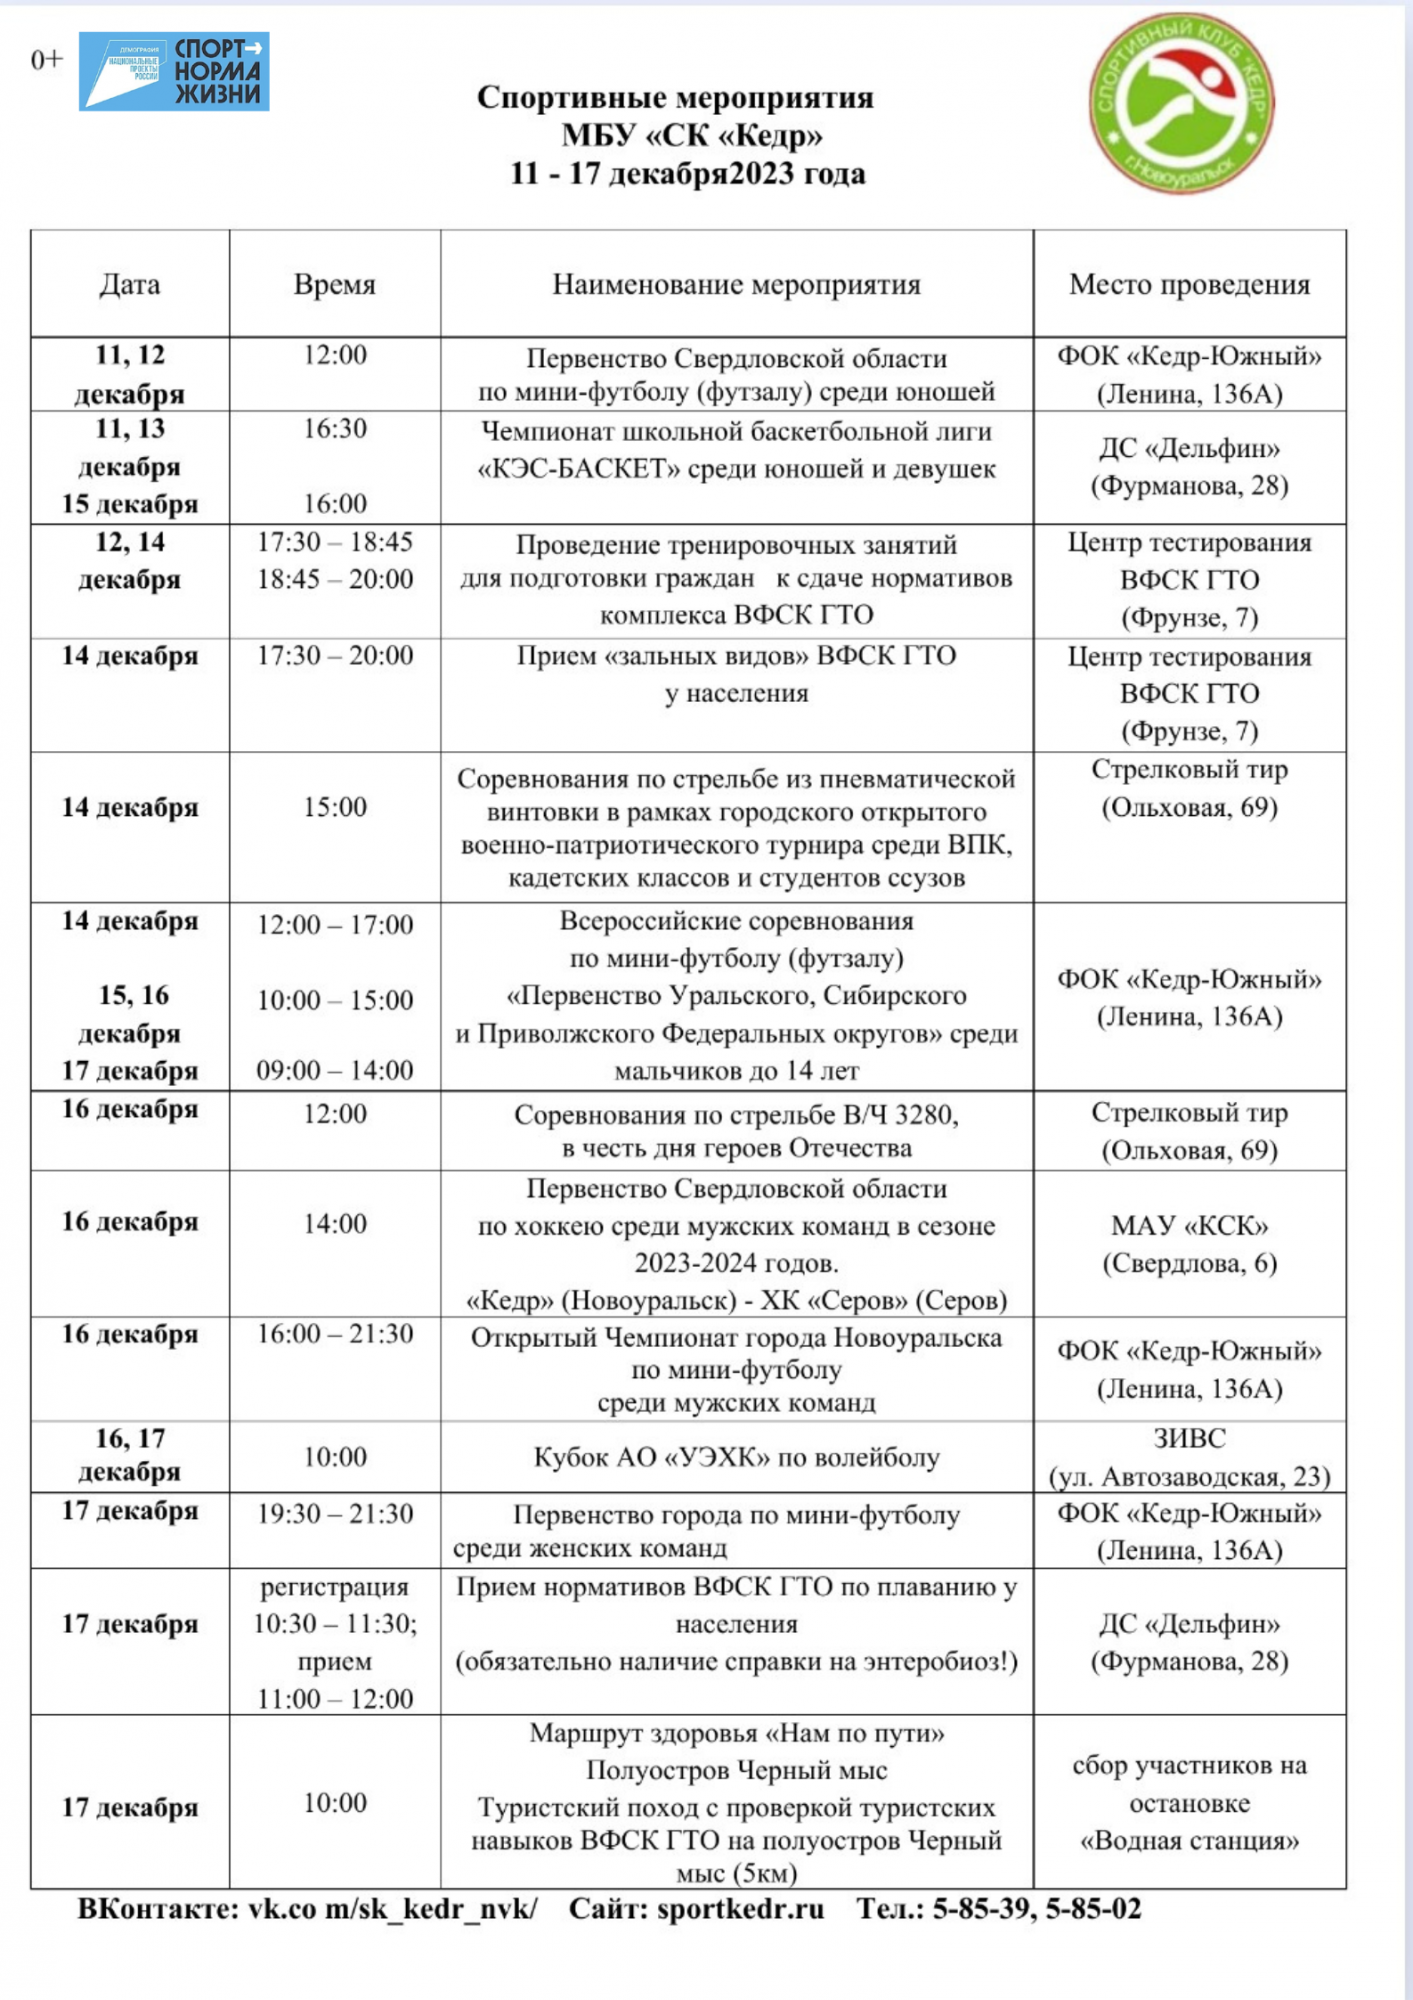 Спортивный календарь Новоуральска. Мероприятий Спортивного клуба "Кедр" с 11 по 17 декабря 2023г.